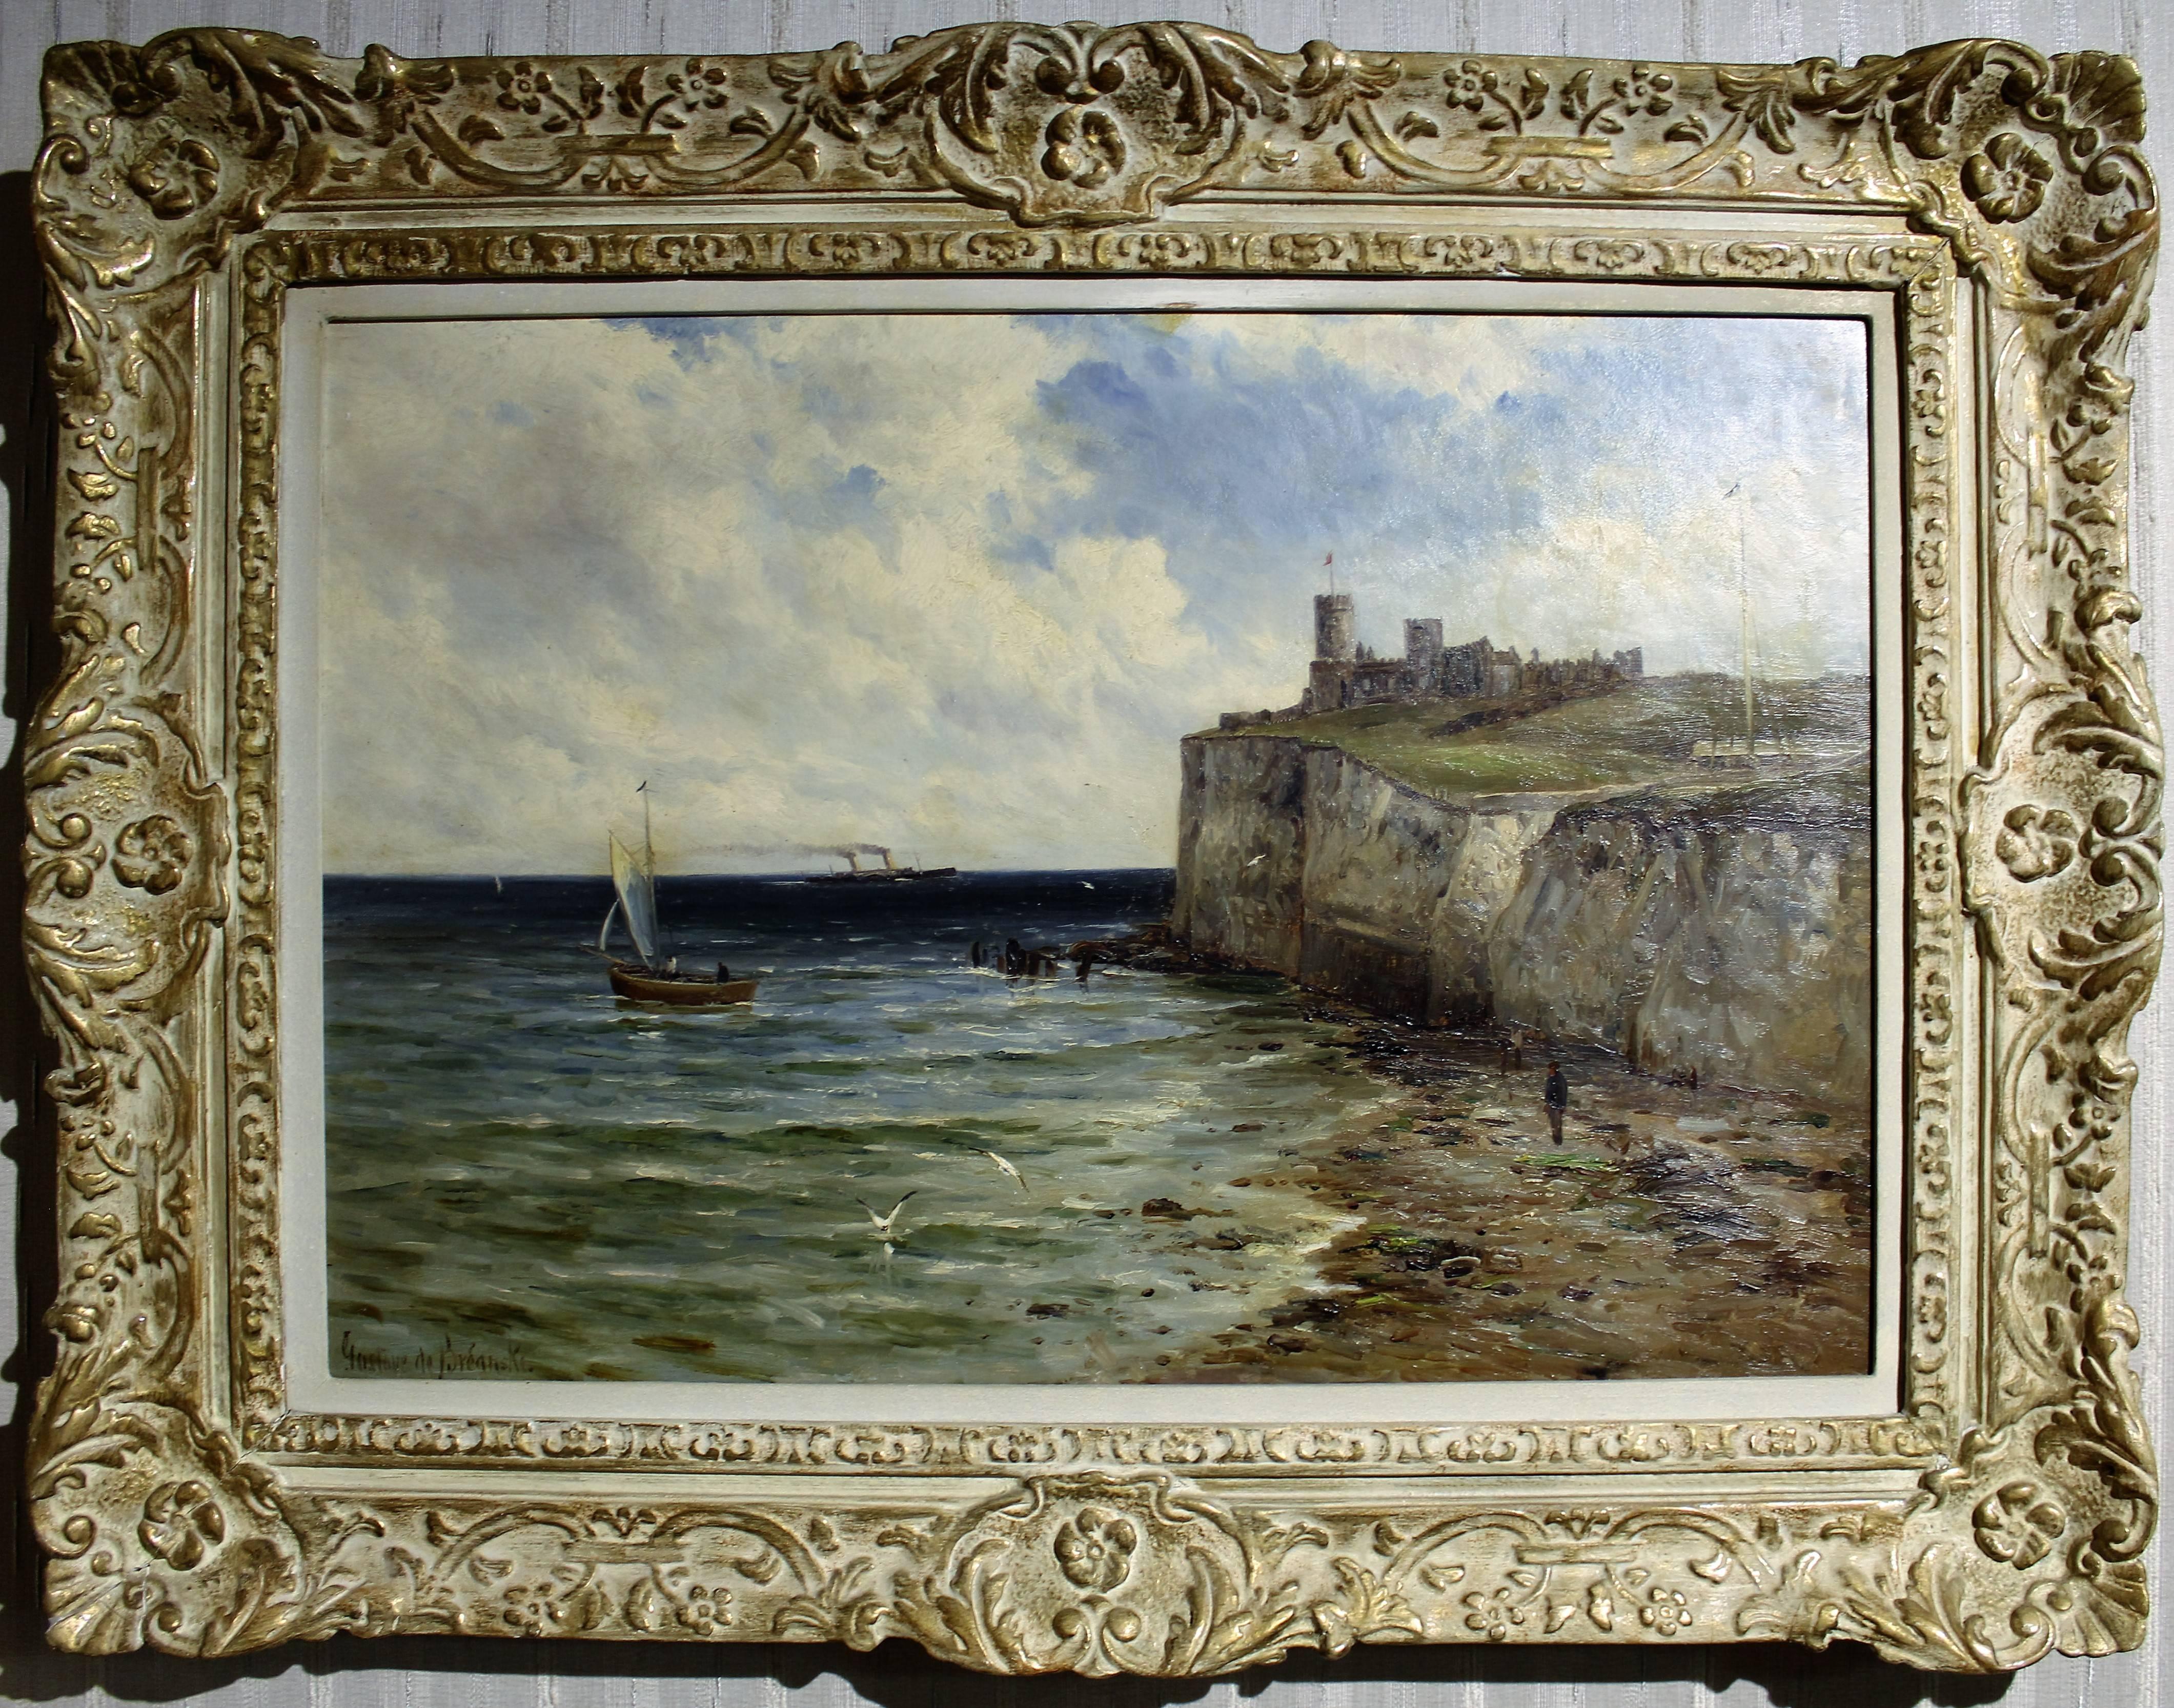 Gustave de Breanski (britannique 1856 - 1898)

Le frère d'Alfred de Breanski (Snr.) et un membre de la célèbre famille de peintres. Son style était plus impressionniste que celui de son frère. Il a peint des paysages, mais a préféré peindre des